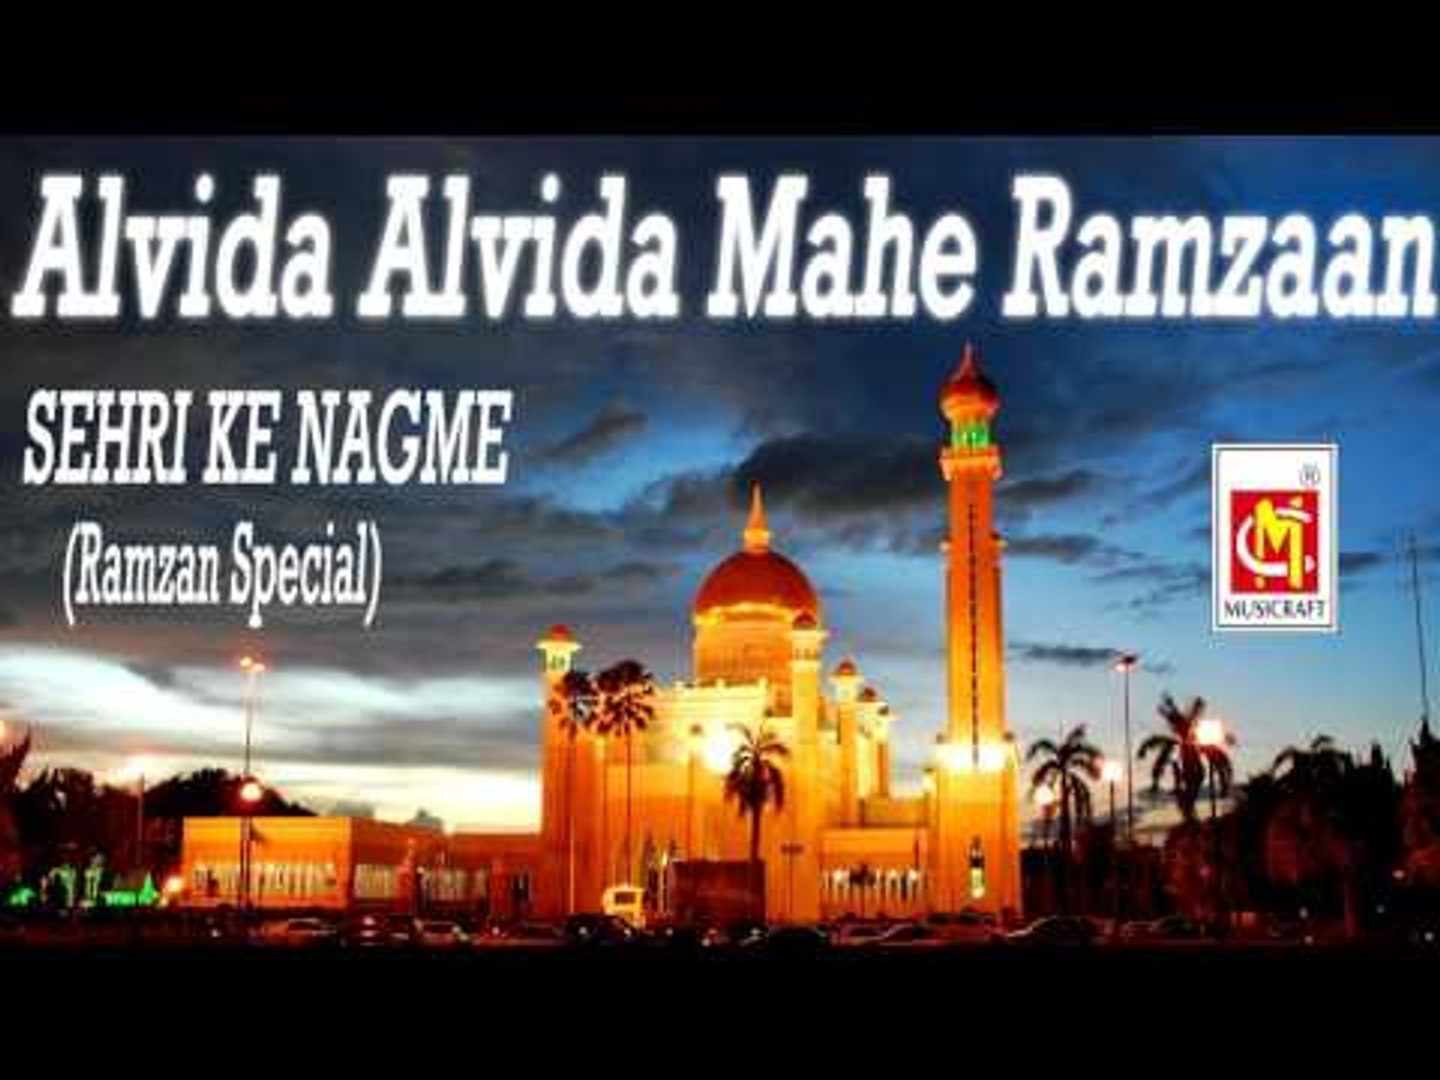 Alvida Alvida Mahe Ramzaan Sehri Ke Nagme Ramzan Spcial - Muslim God 786 Logo , HD Wallpaper & Backgrounds